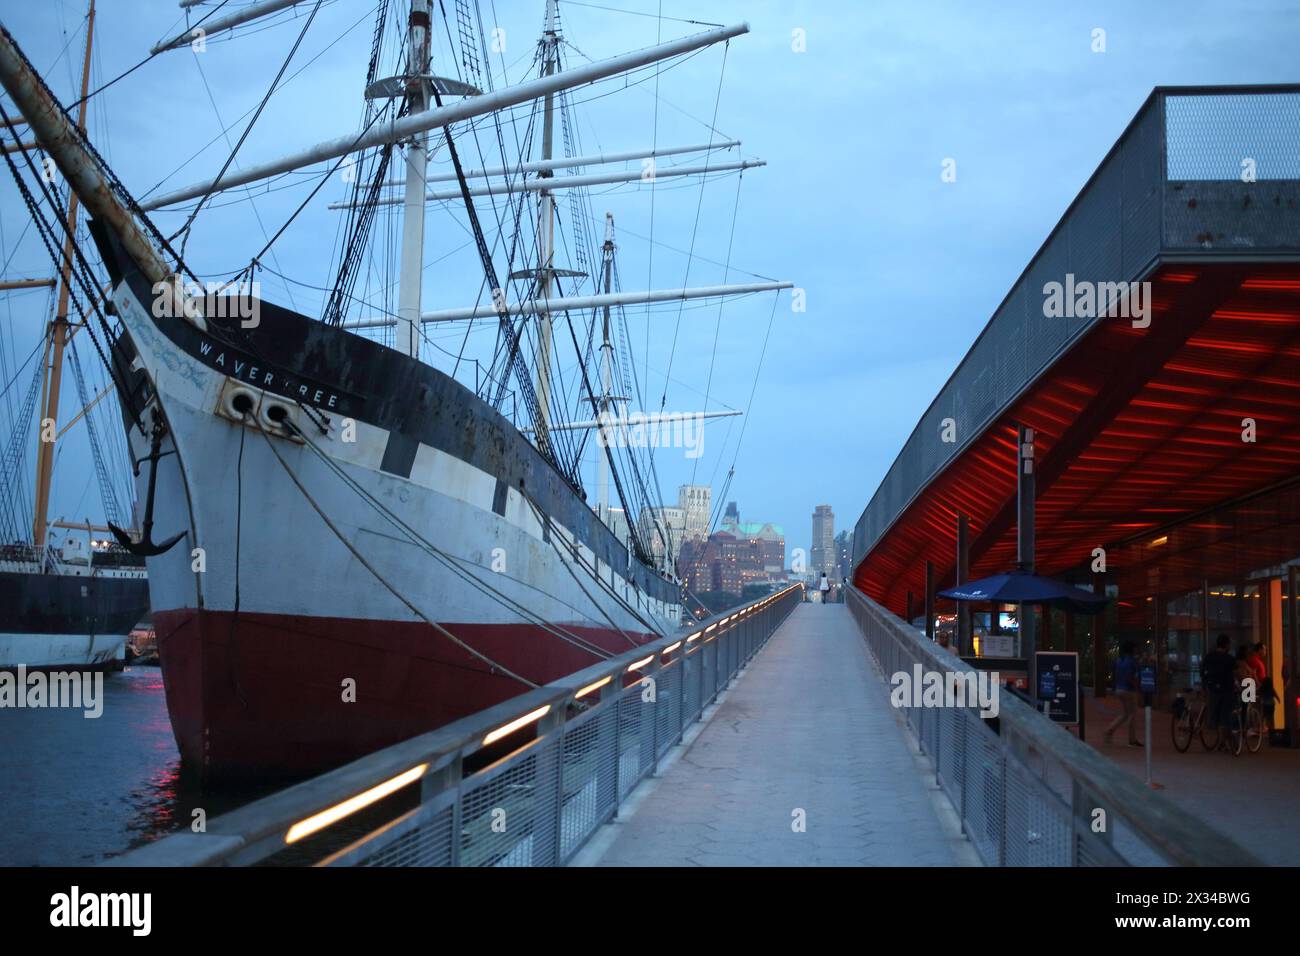 NEW YORK, États-Unis - 07 septembre 2014 : navire historique Wavertree sur le quai dans le South Street Seaport dans la soirée Banque D'Images